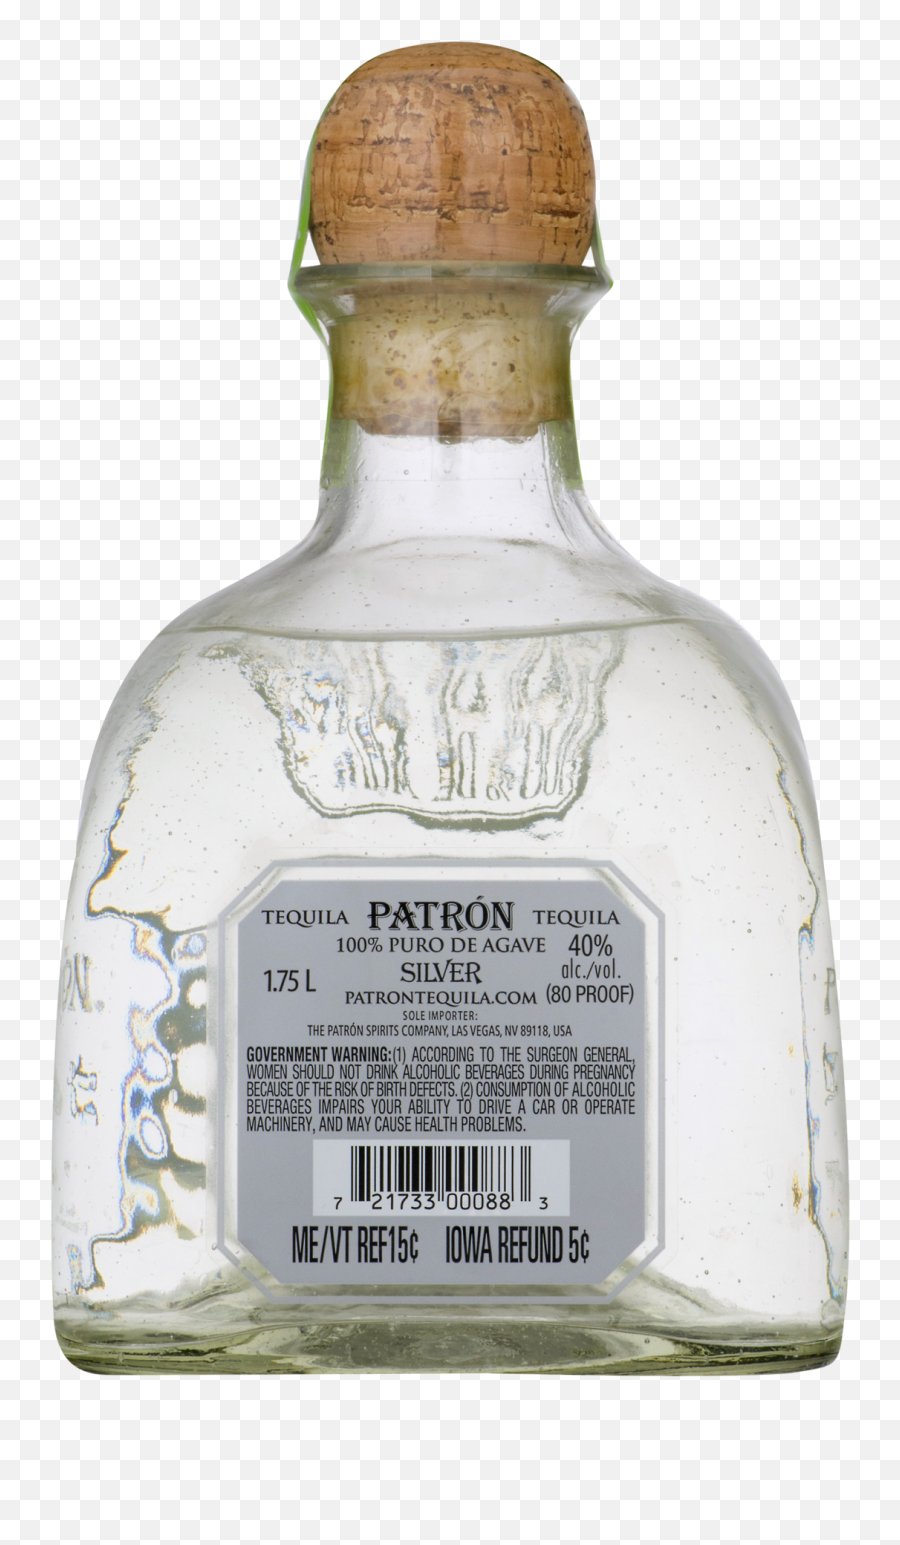 Patron Bottle Png - Patron,Patron Bottle Png